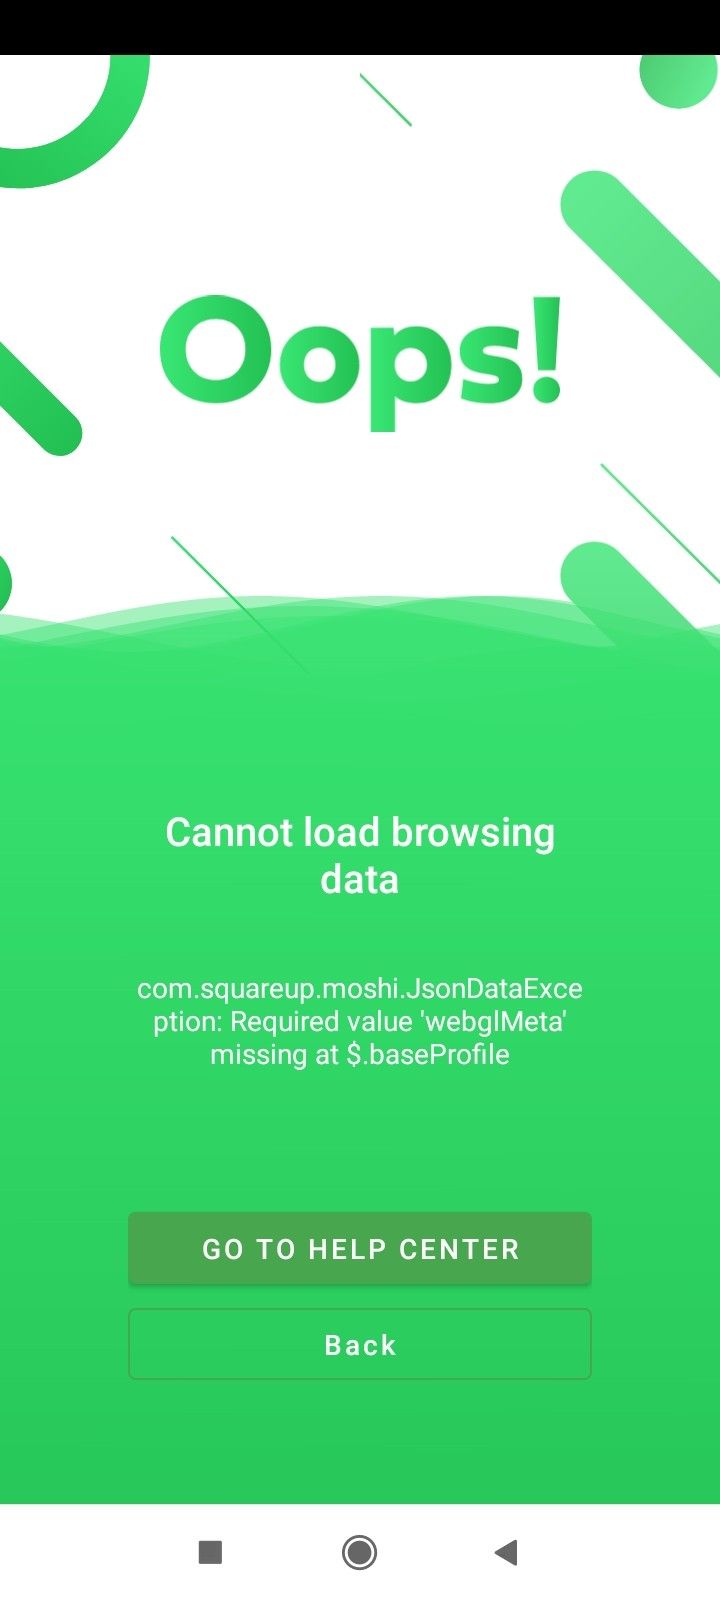 cannot-load-browsing-data-kameleo-mobile-app.jfif